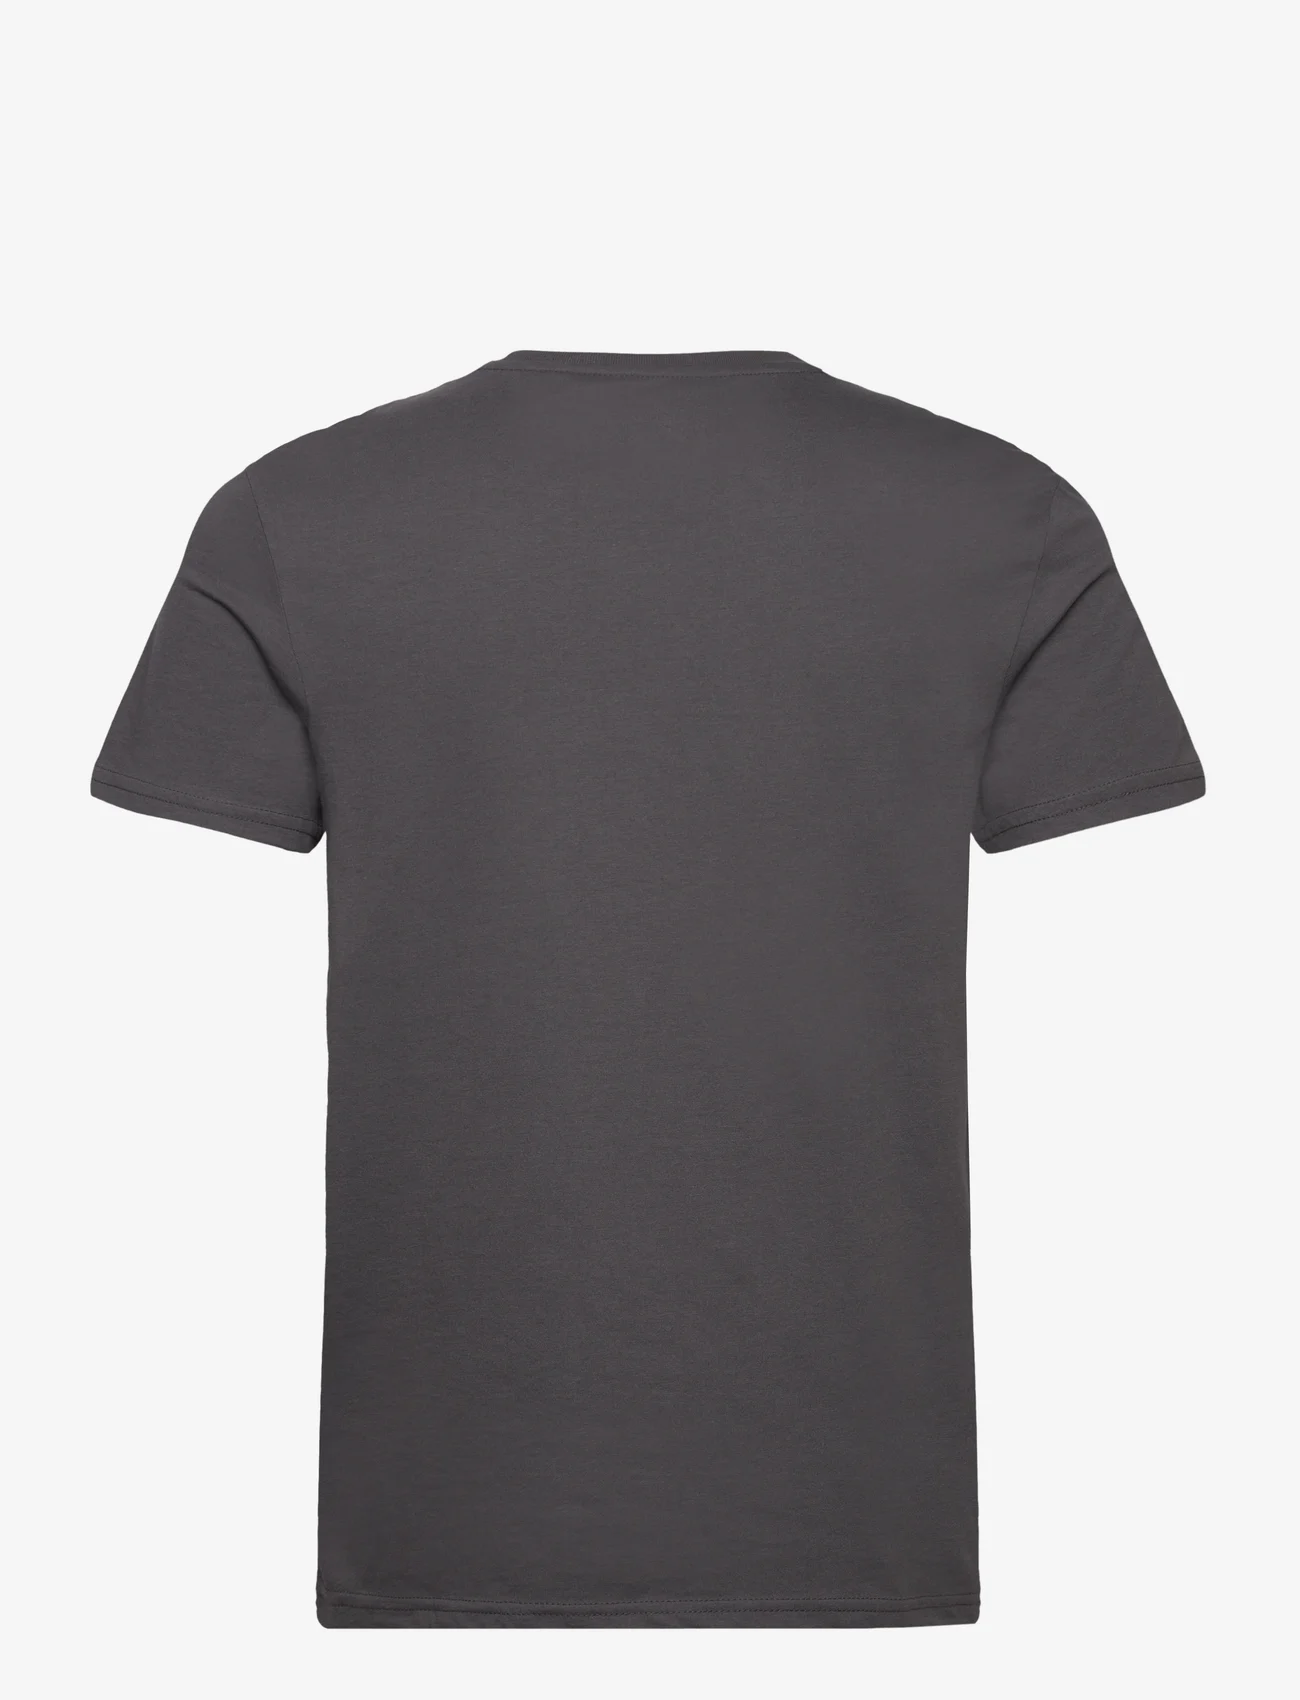 Lyle & Scott Sport - Martin SS T-Shirt - short-sleeved t-shirts - x129 graphite - 1